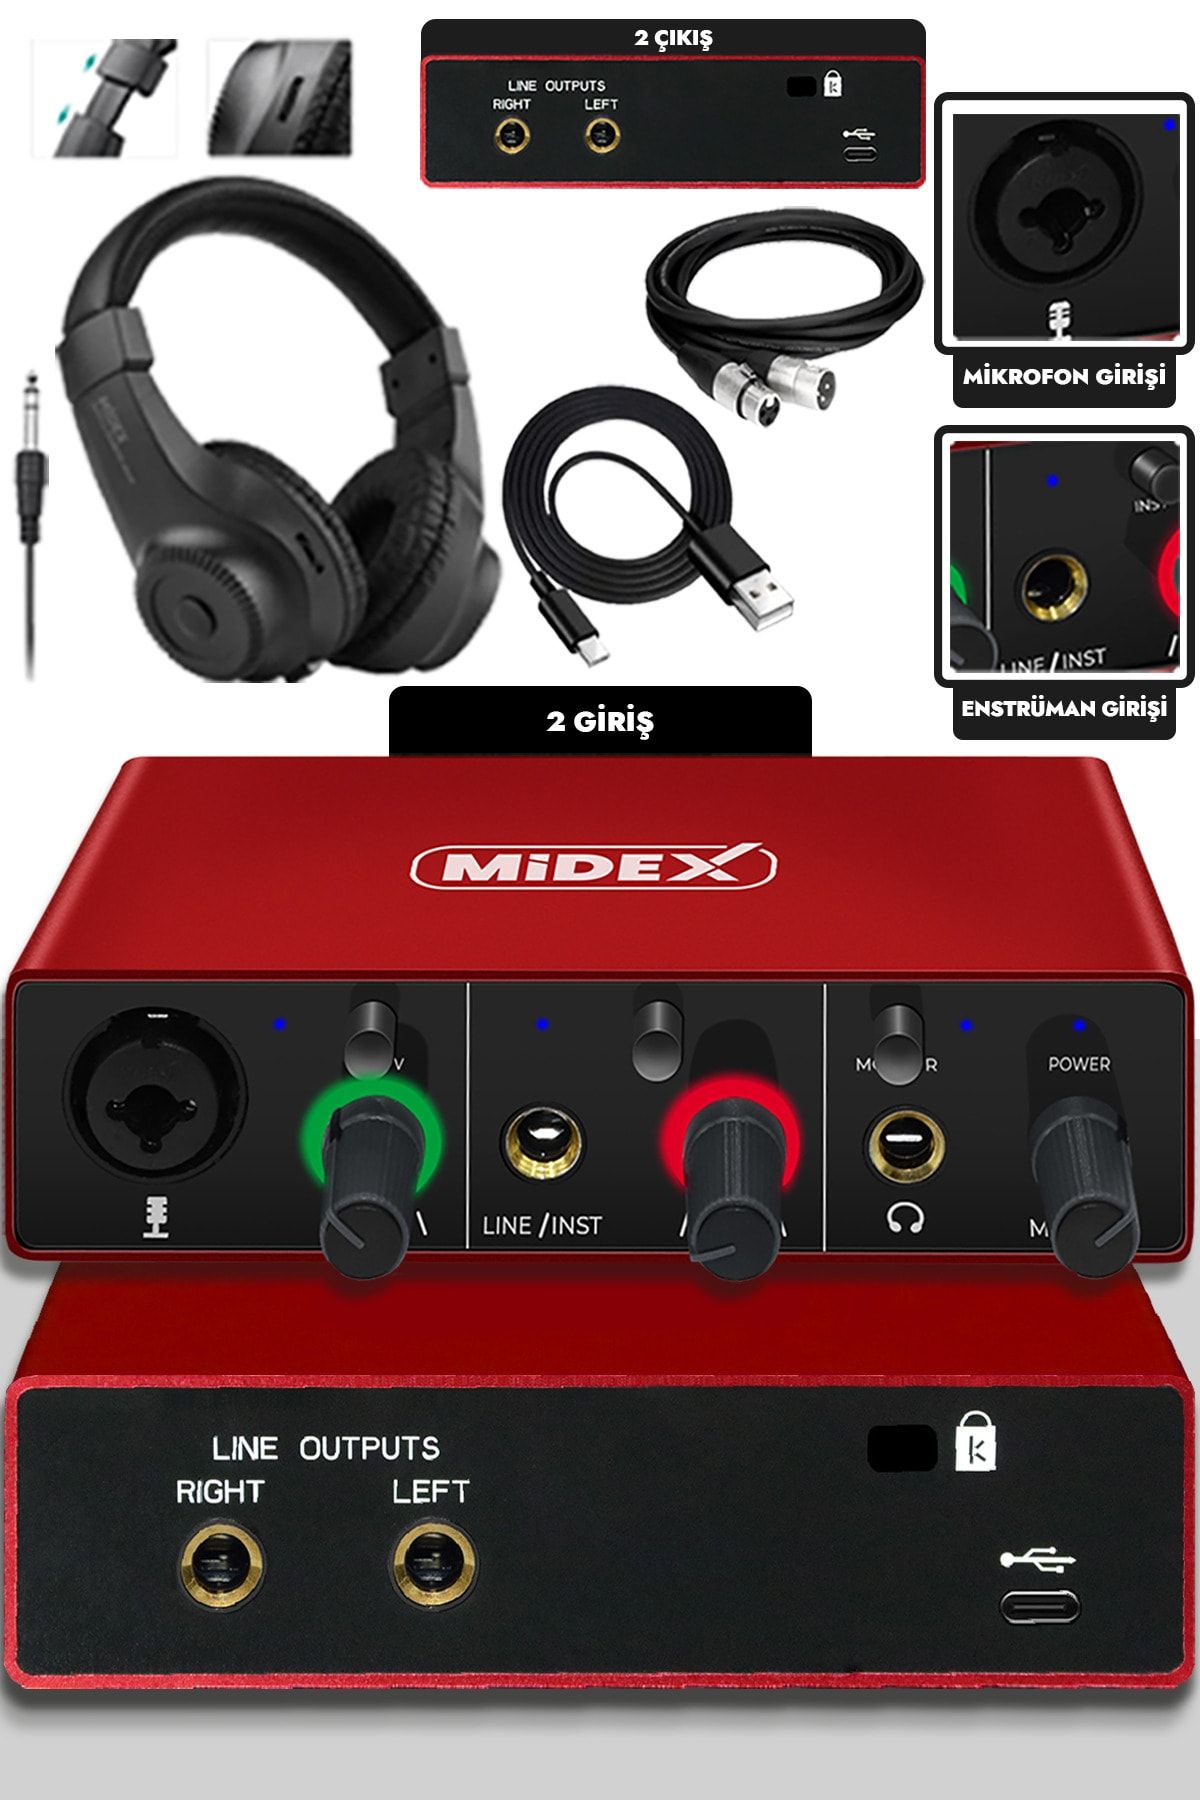 Midex Glx-500 Pro-hd 2 Giriş 2 Çıkış Usb Stüdyo Ses Kartı Kulaklık Ve Xlr Kablo